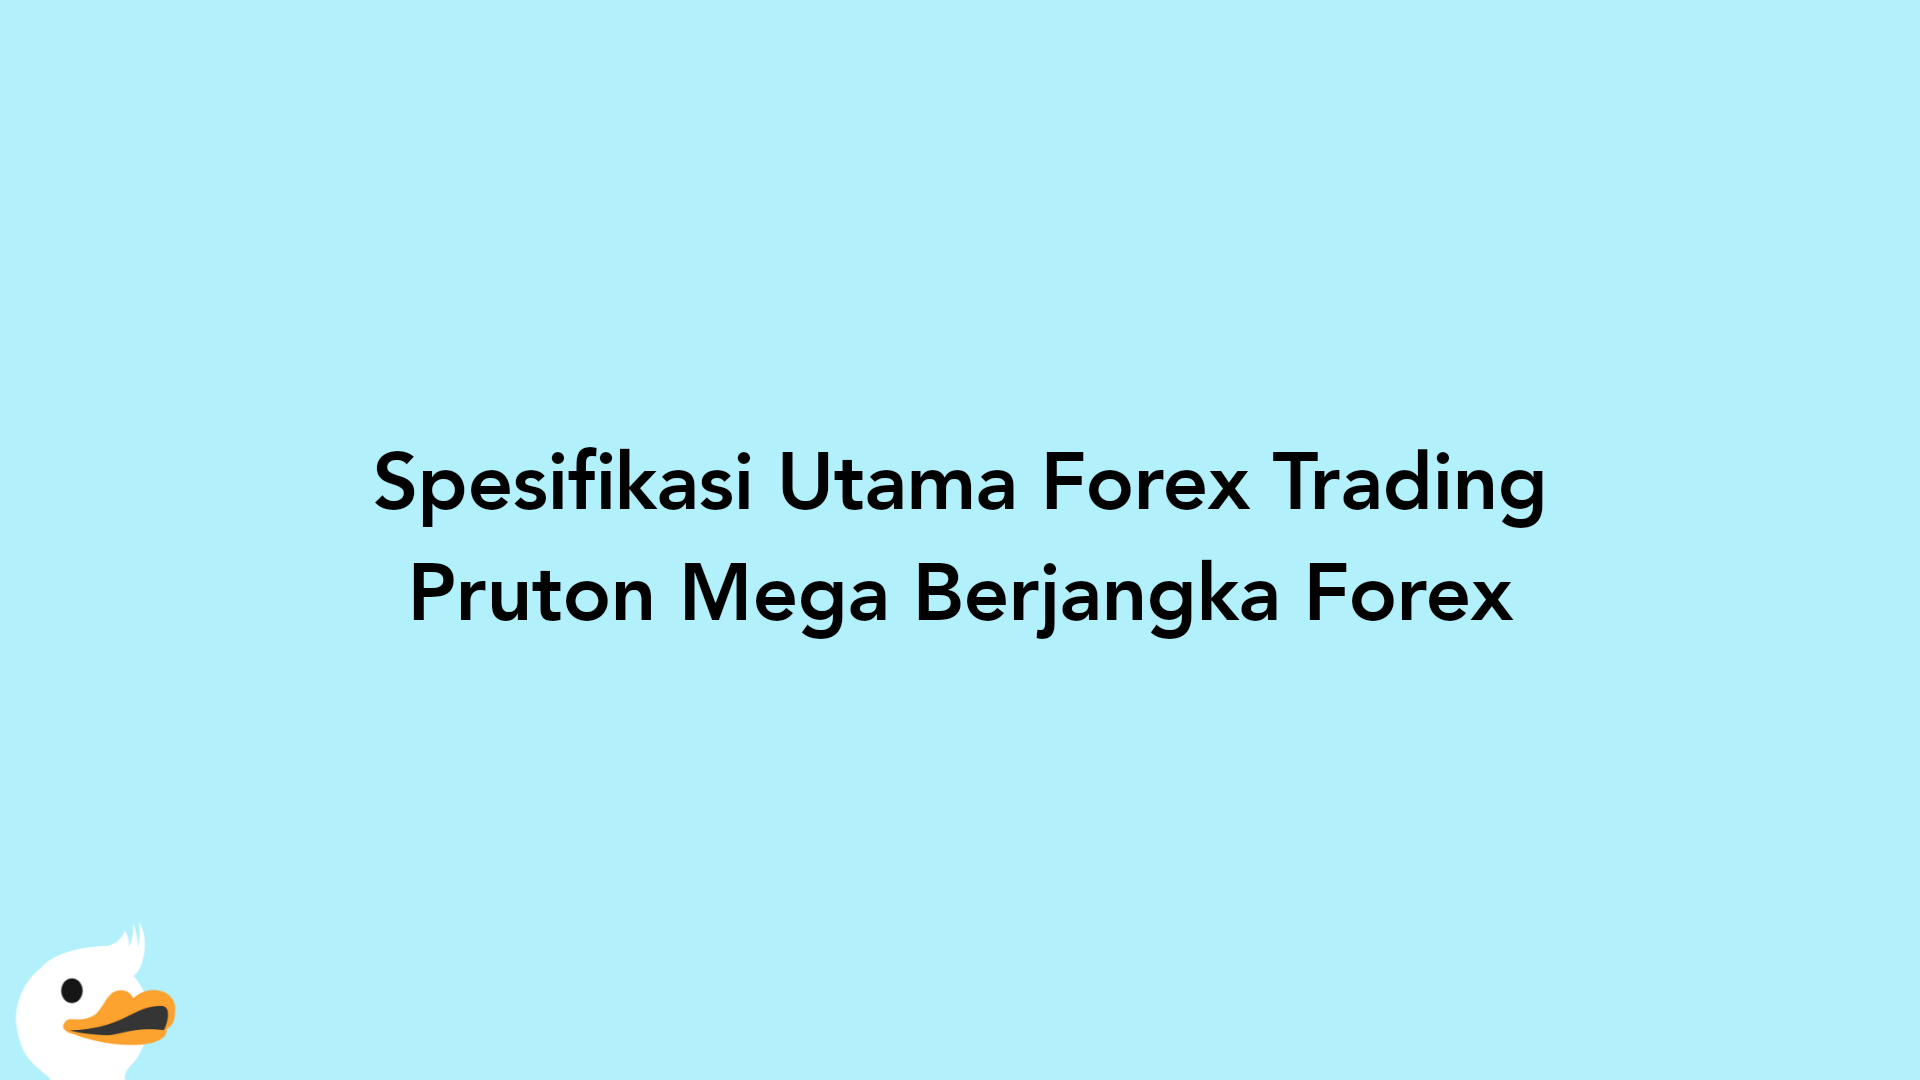 Spesifikasi Utama Forex Trading Pruton Mega Berjangka Forex